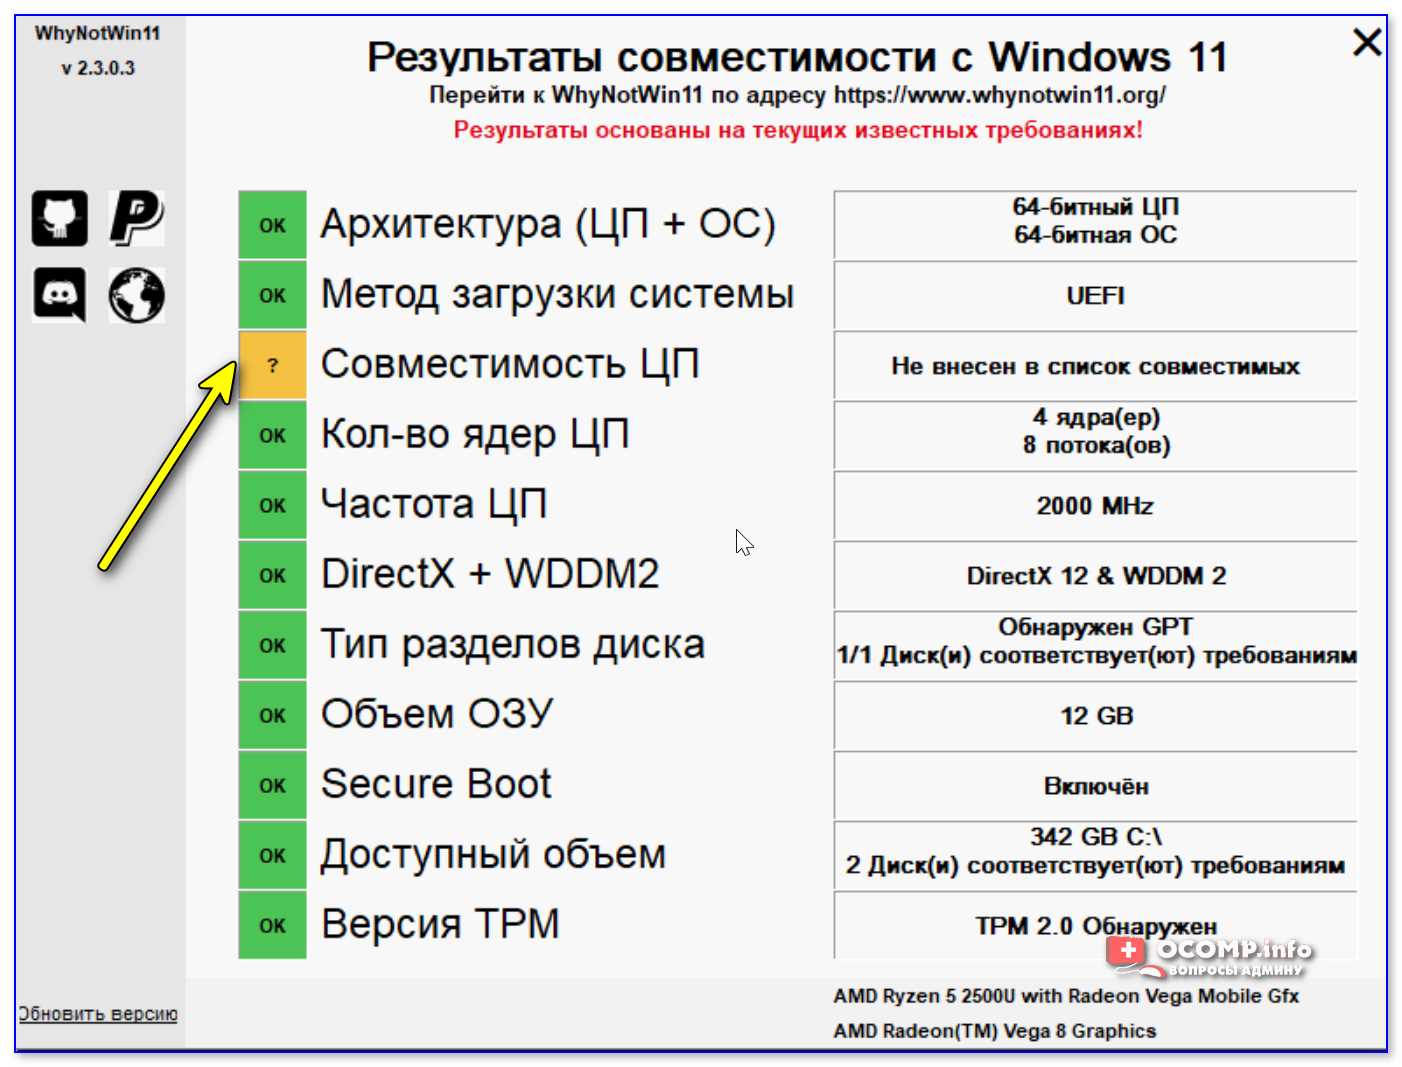 Совместимость компьютера/ноутбука с Windows 11